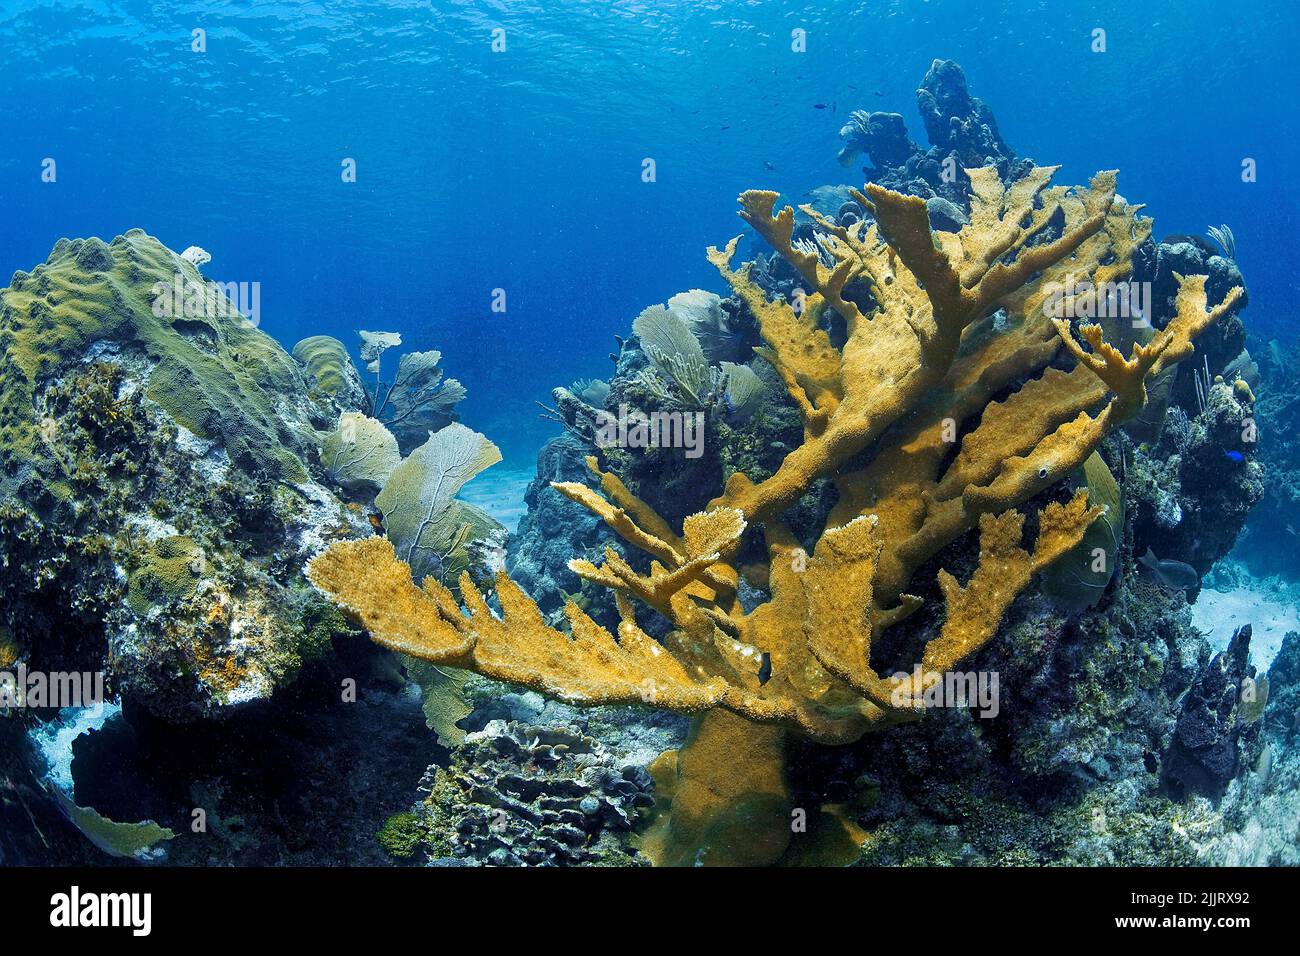 Elkhorn corals (Acropora palmata) in a caribbean coral reef, Utila, Bay Islands, Honduras, Caribbean Stock Photo